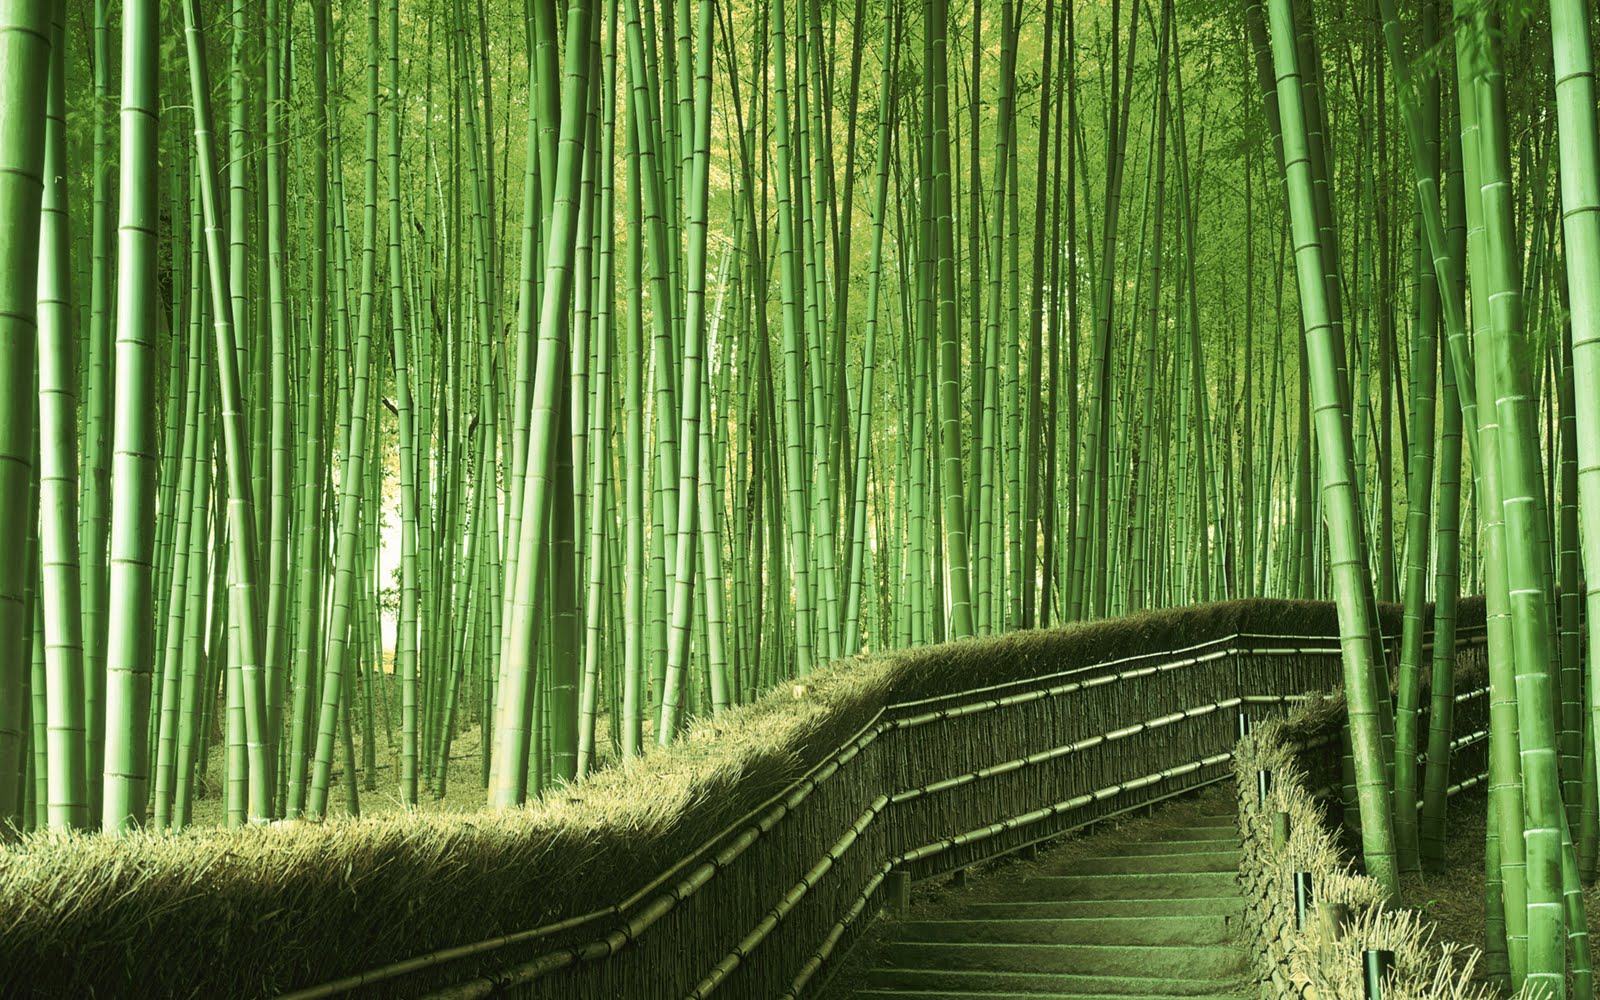 papier peint en bambou,bambou,vert,la nature,arbre,paysage naturel